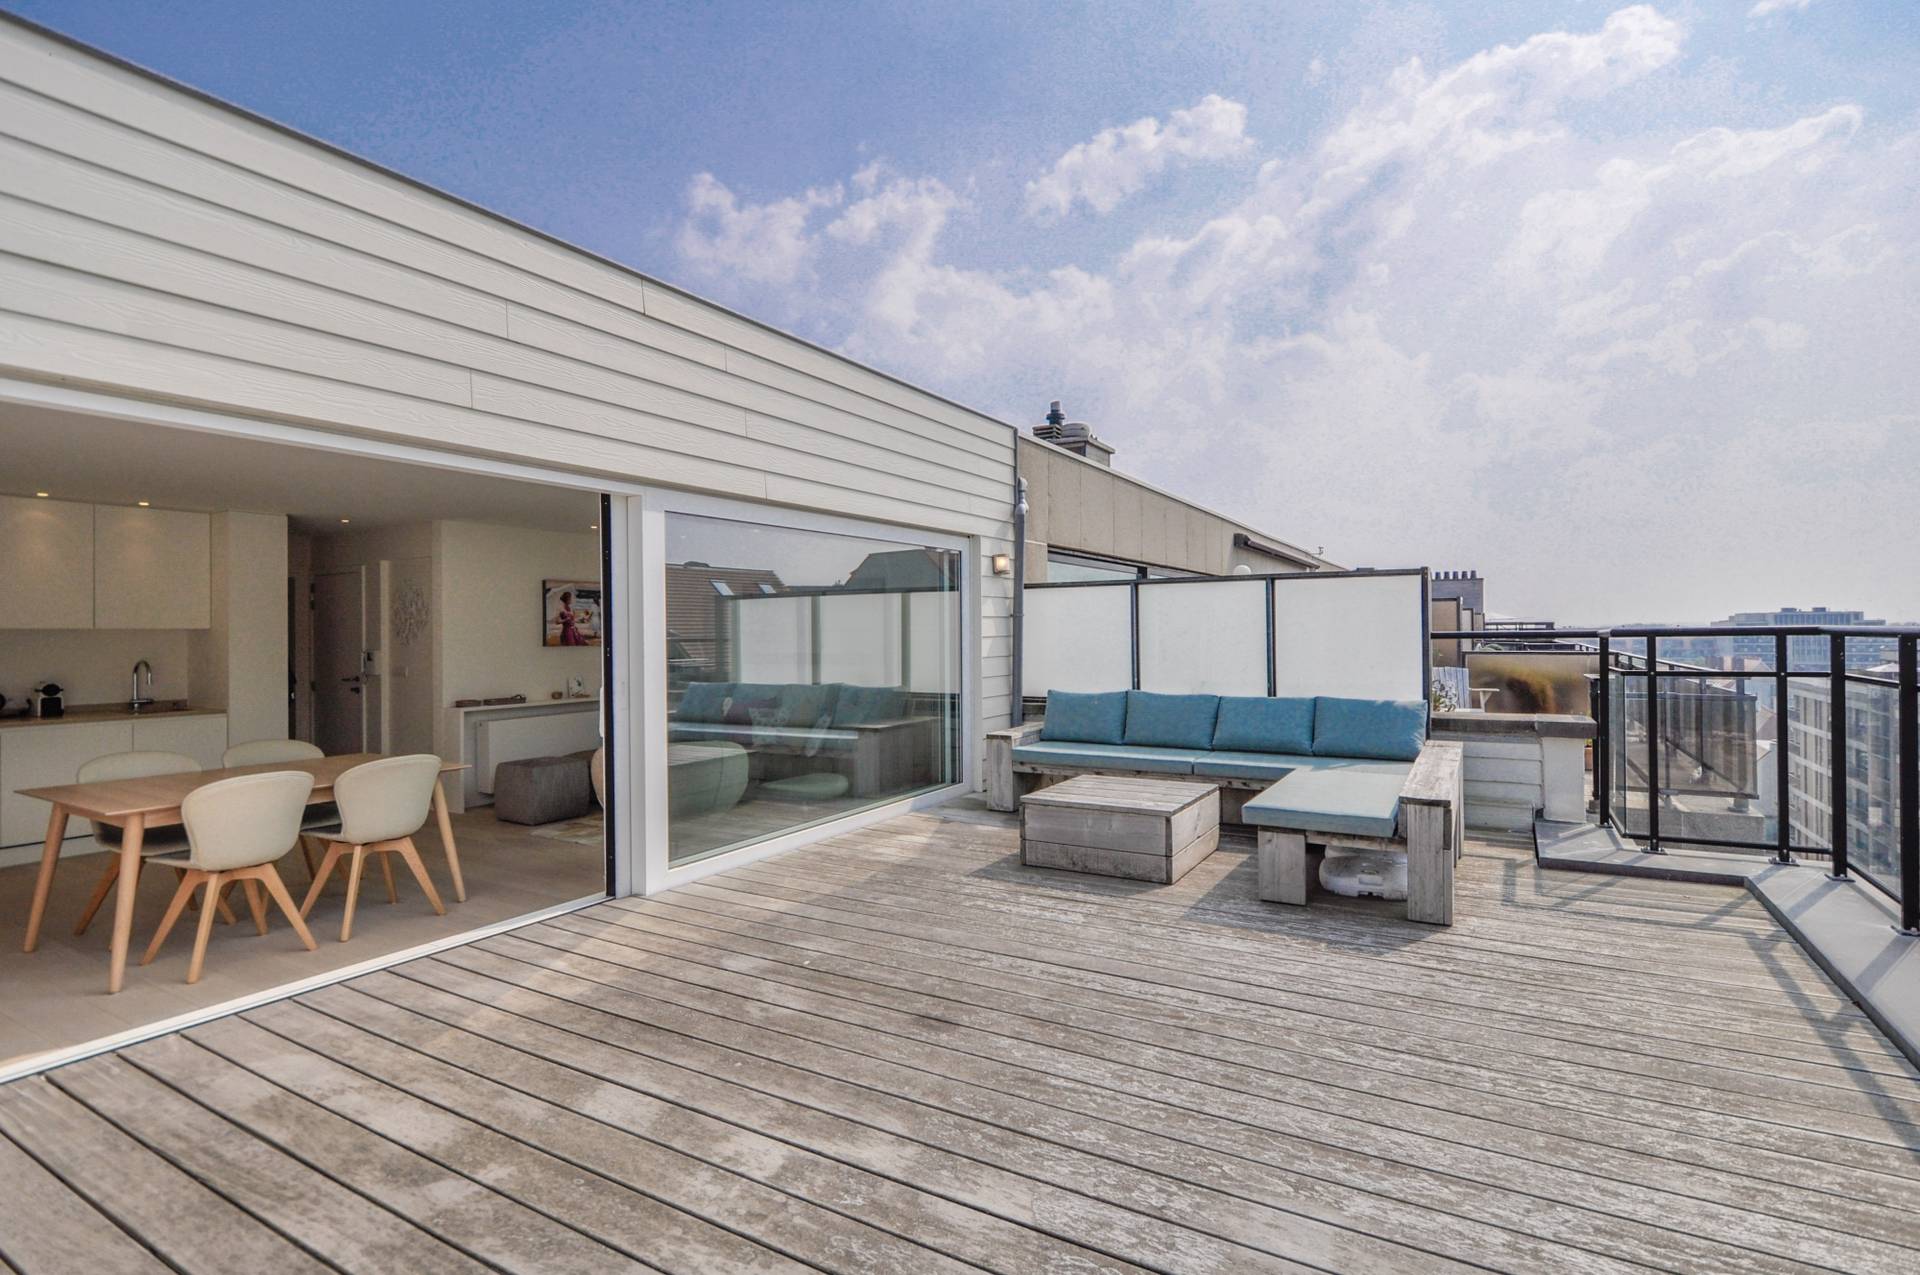 VERKOOP  Appartement 2 SLPK Knokke-Heist -Penthouse / Zeezicht / 2 terrassen